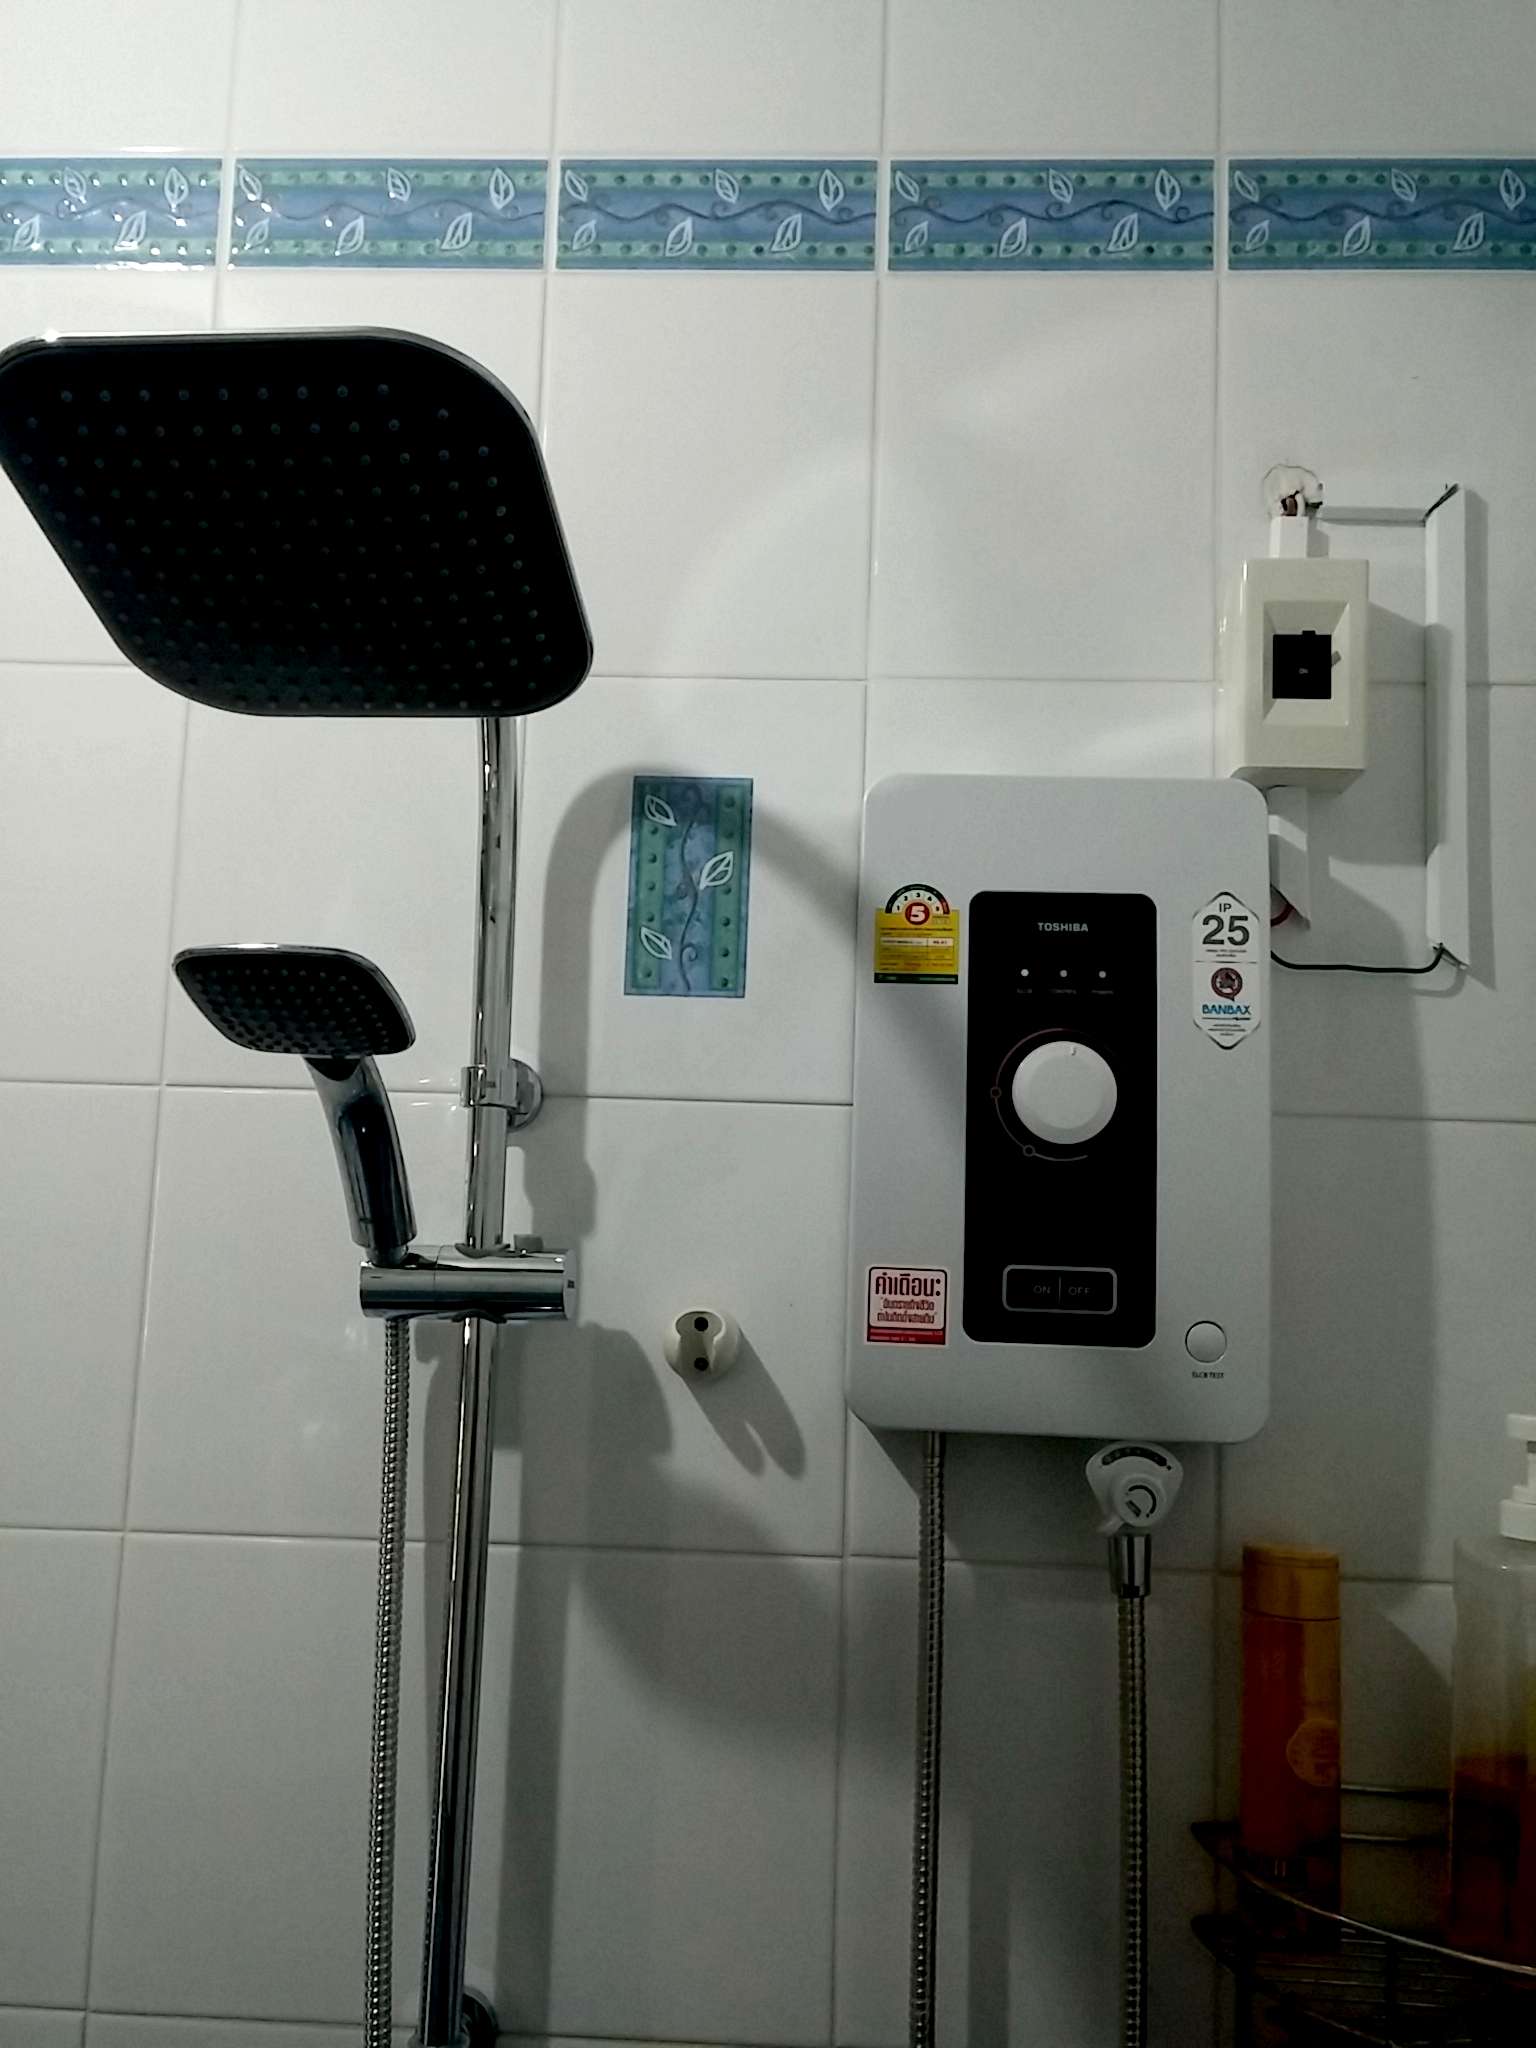 Cr] รีวิวเครื่องทำน้ำอุ่นที่เหมาะใช้งานกับ Rain Shower หรือคนที่ต้องการน้ำแรงๆ  Toshiba Wh-4511Mc - Pantip